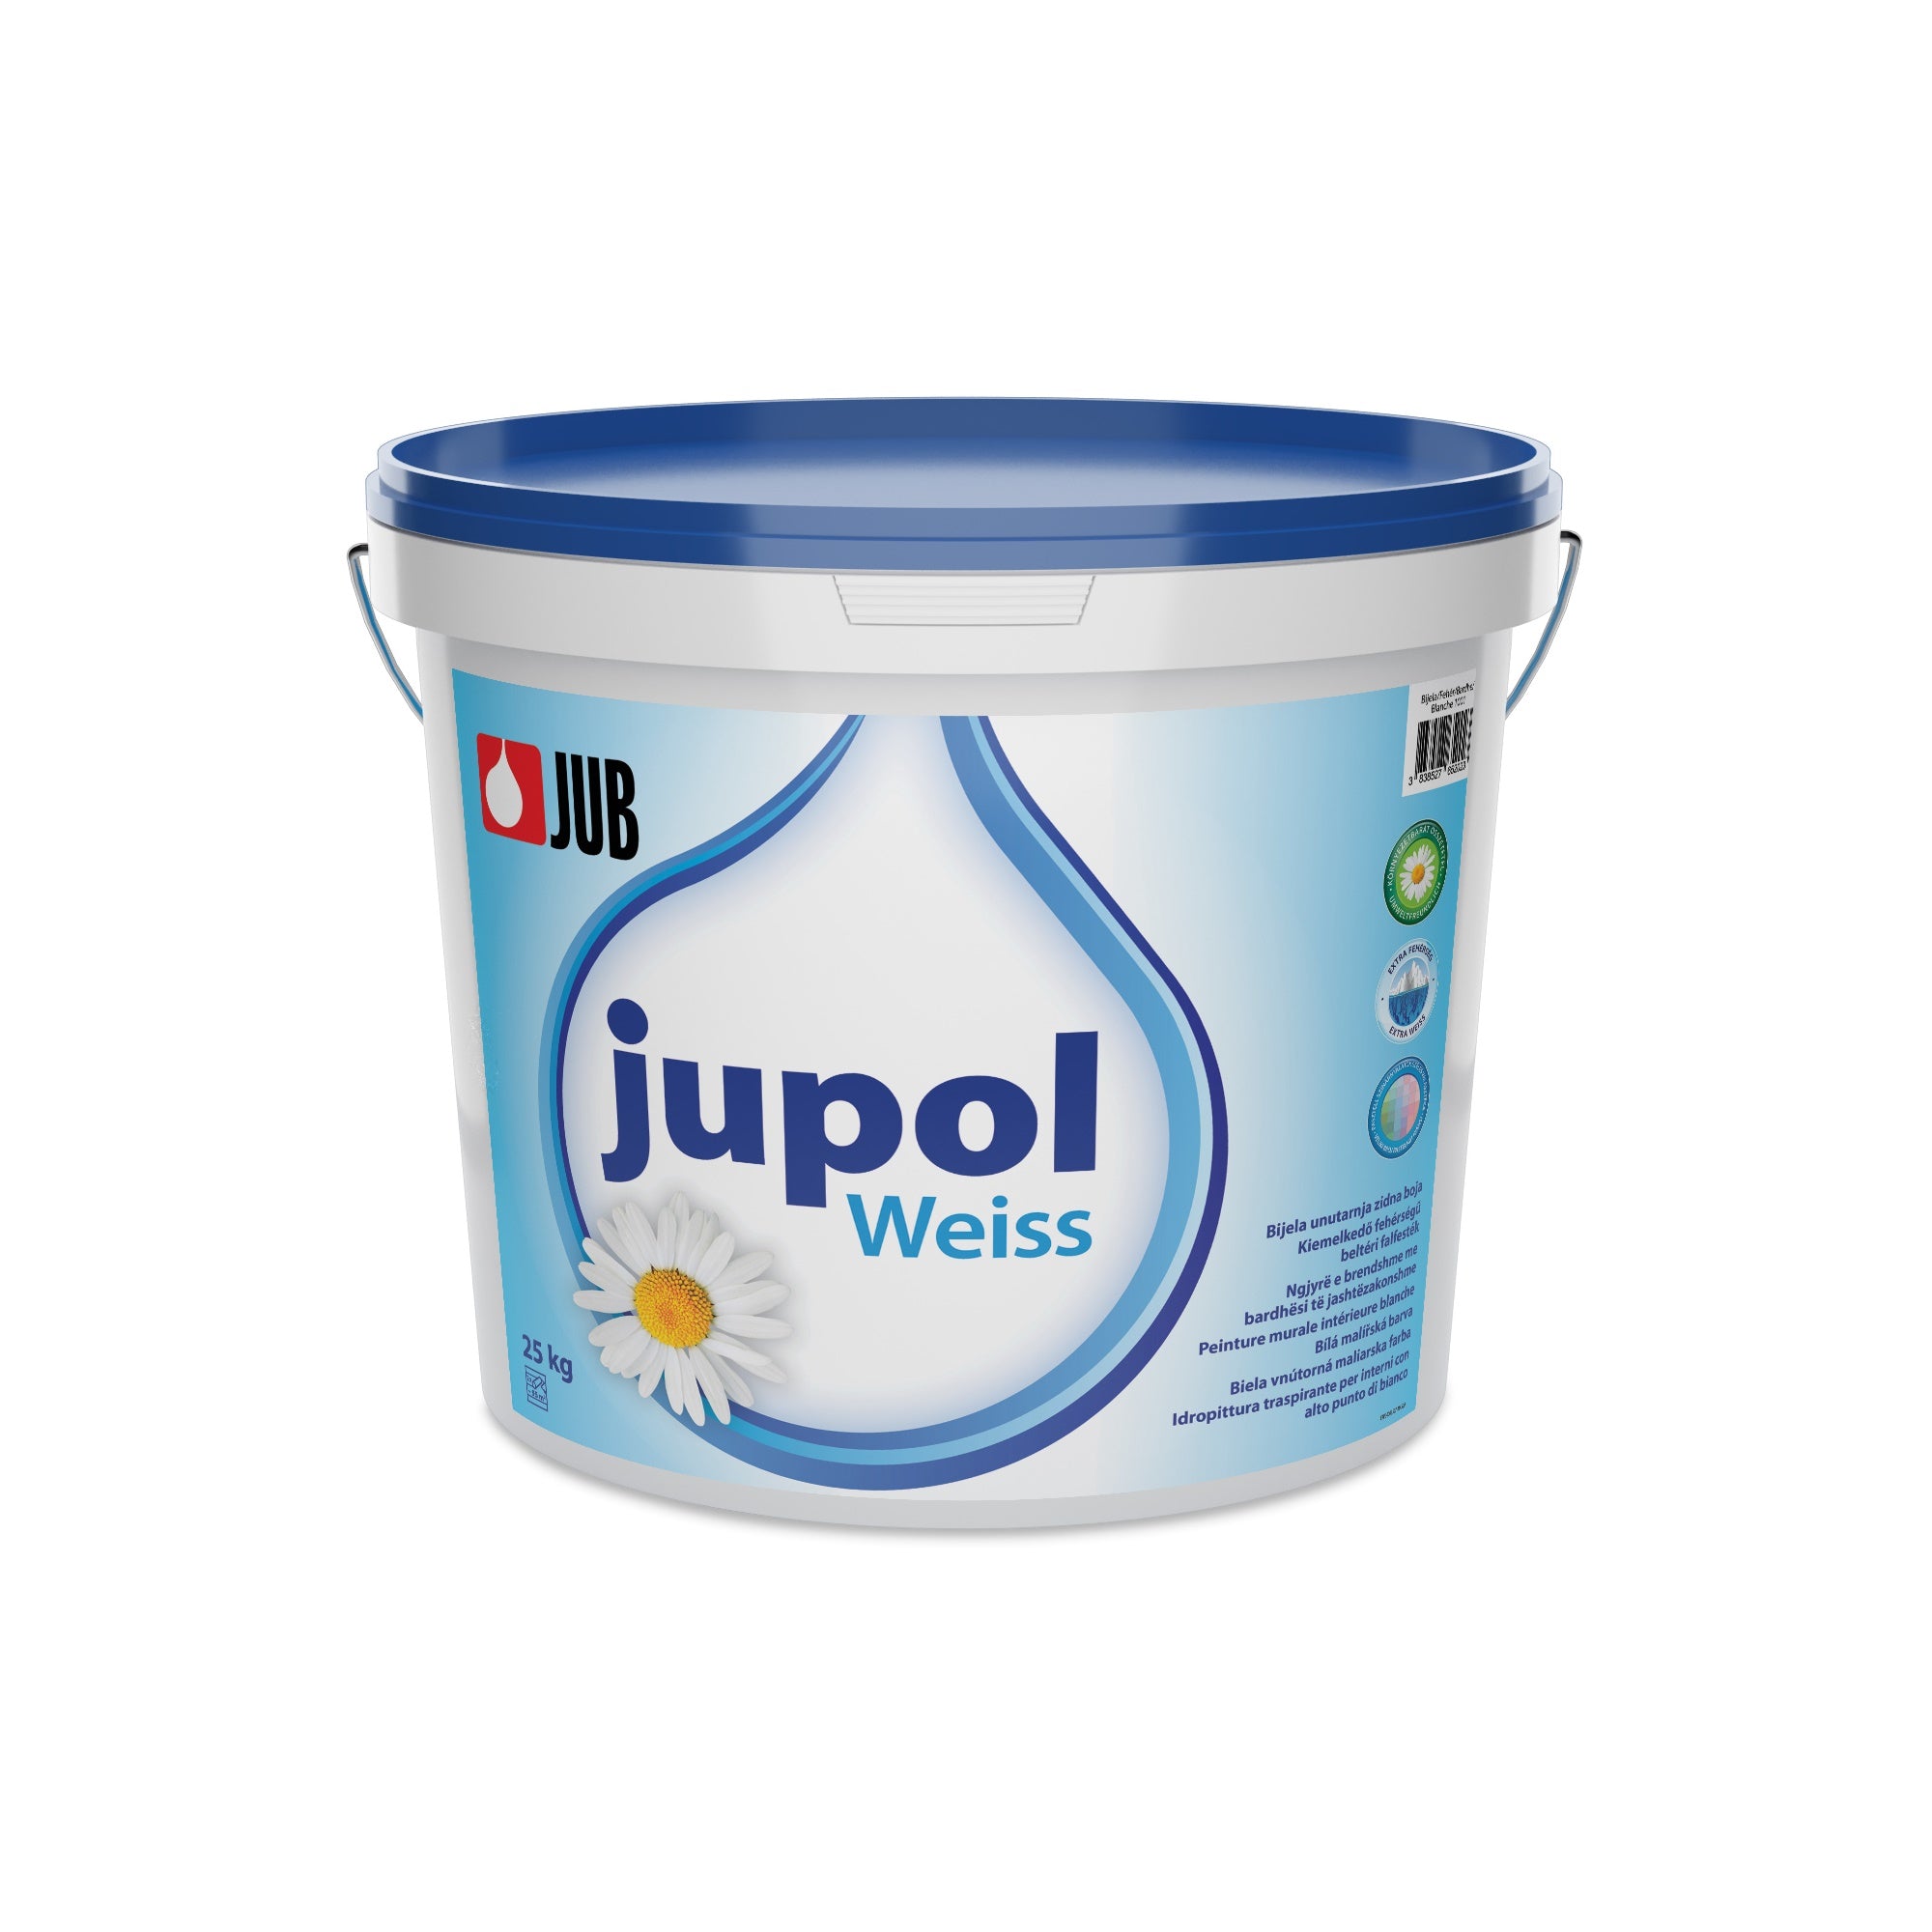 JUB JUPOL Weiss biela vnútorná maliarska farba 25 kg